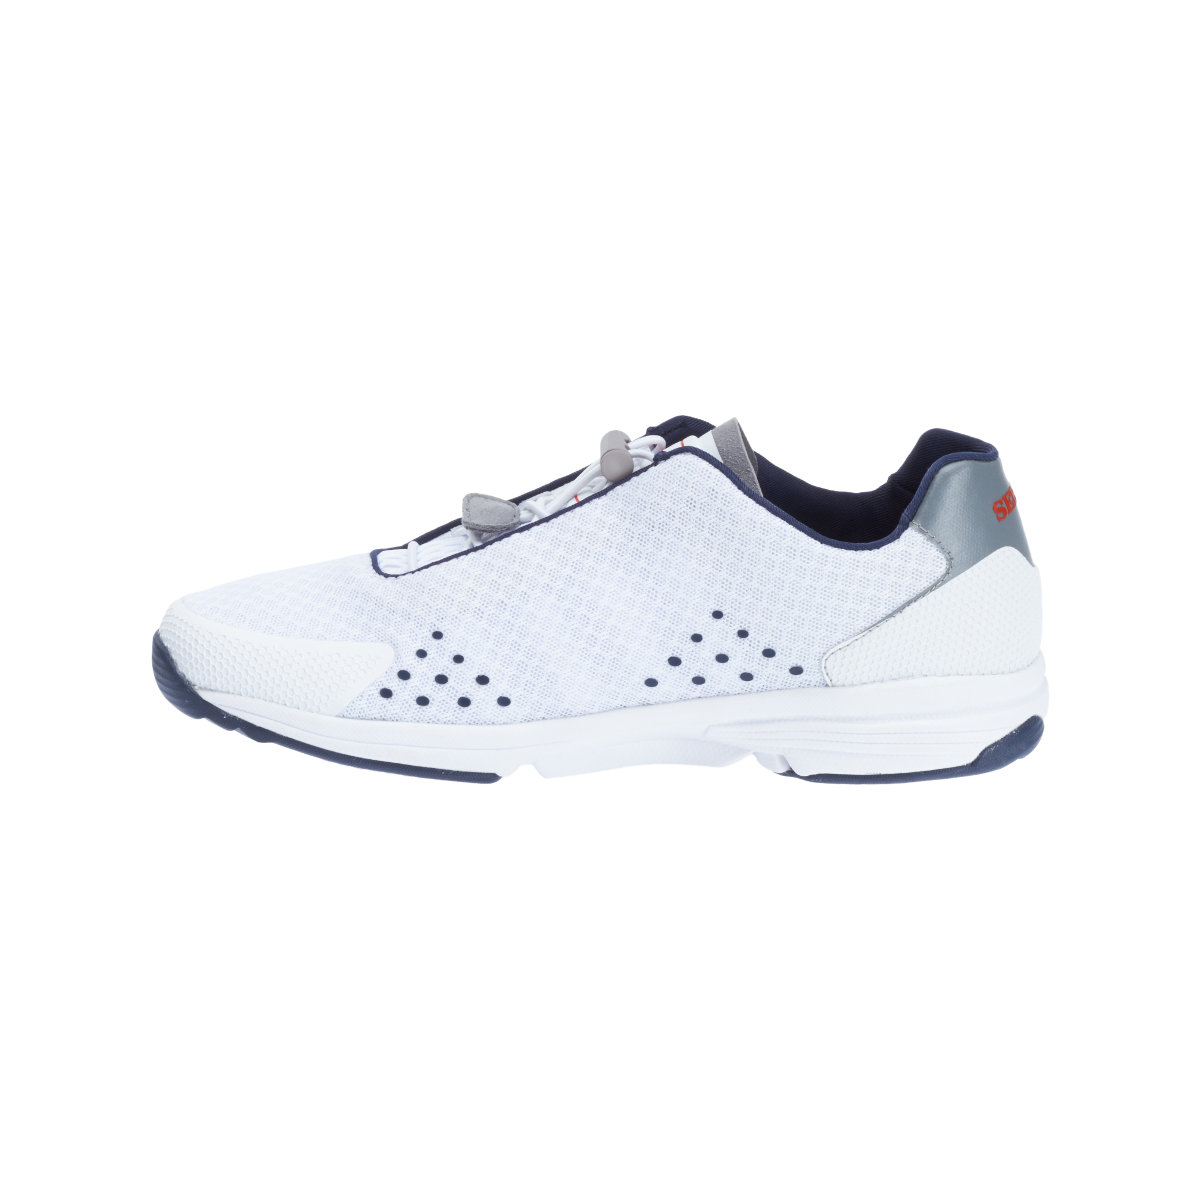 Sebago Cyphon Sea Sport chaussures à voile femme blanche, taille EU 41 (US 10)